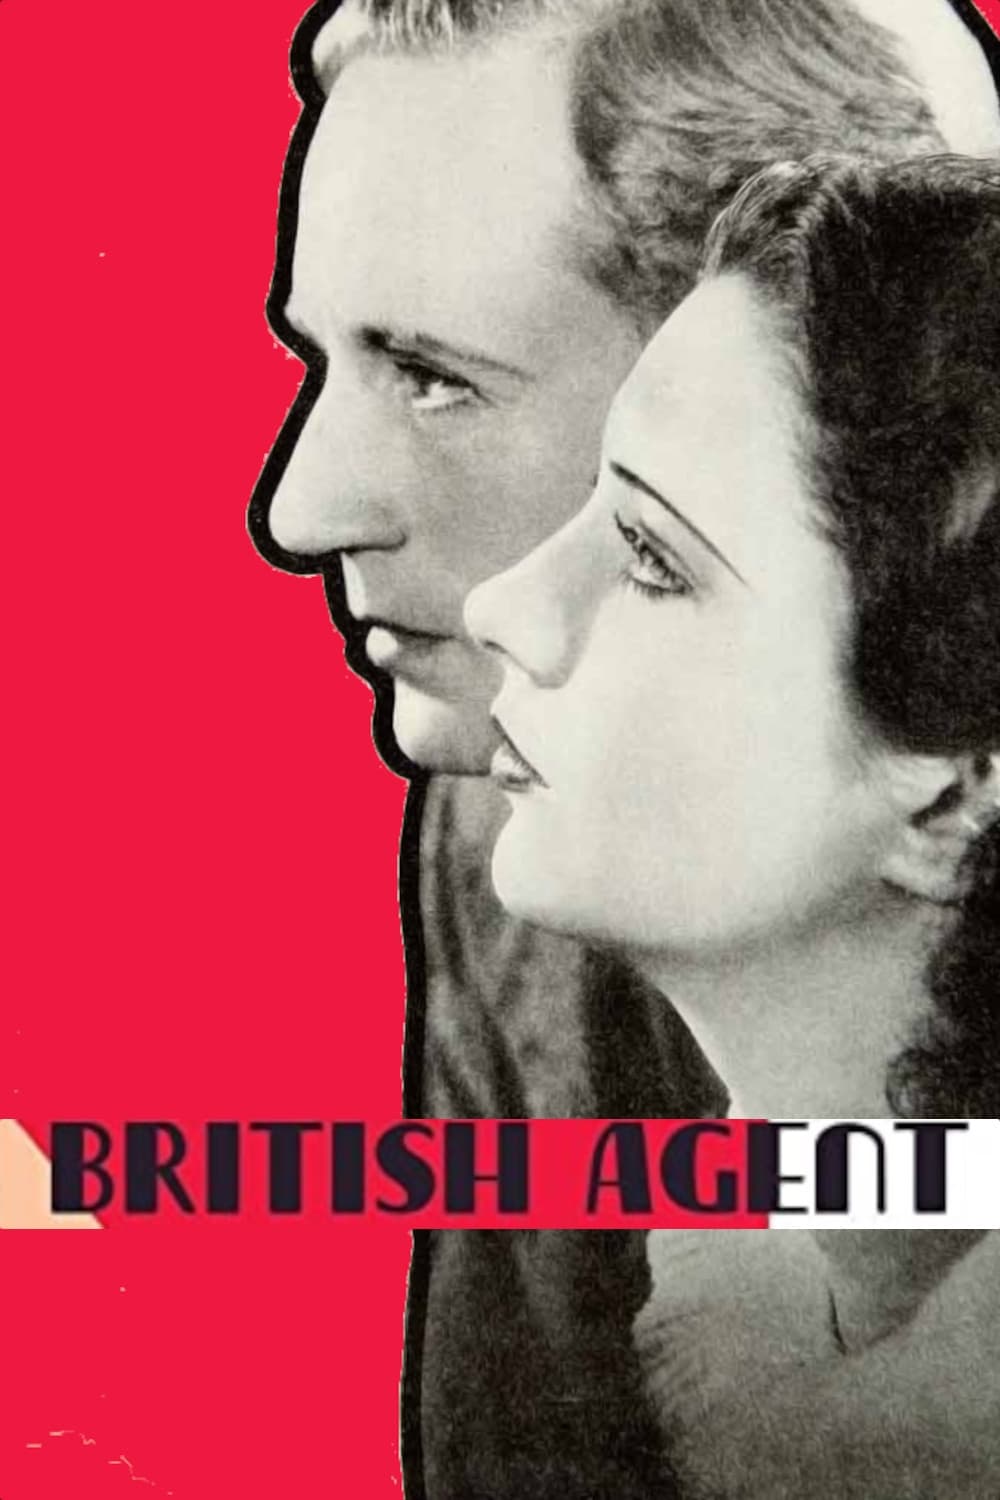 British Agent